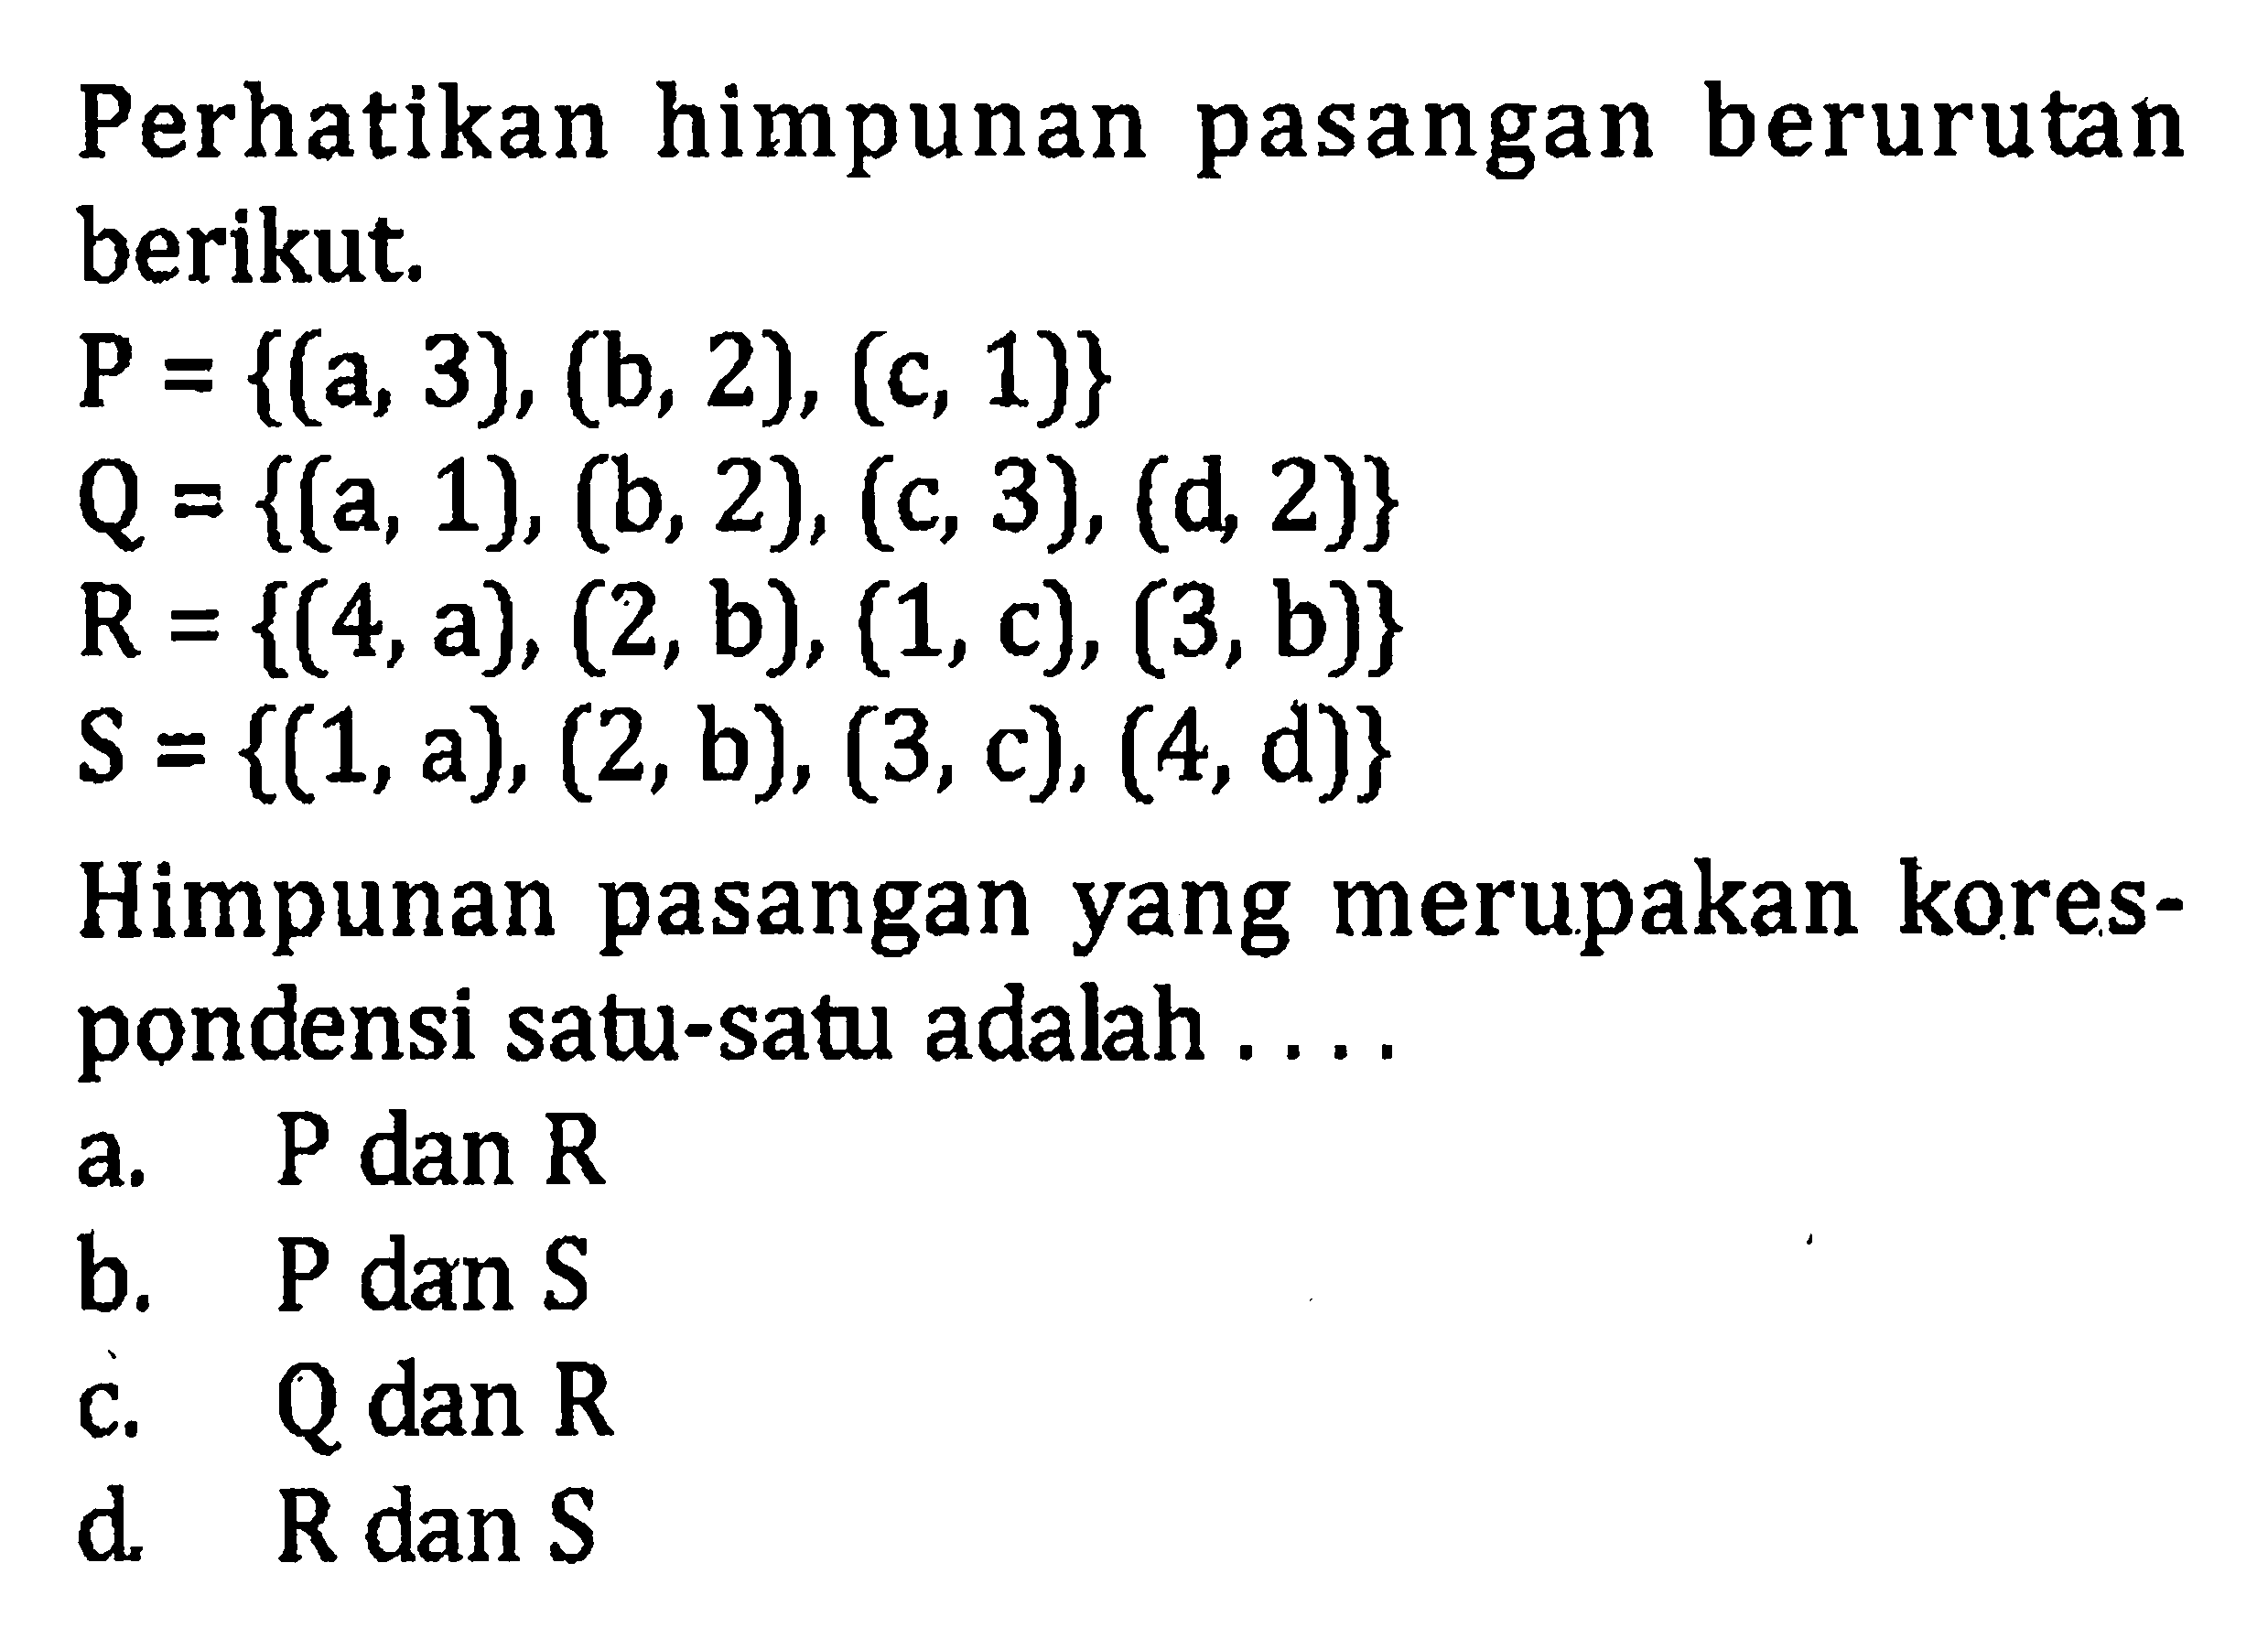 Perhatikan himpunan pasangan berurutan berikut; P = {(a, 3), (b, 2), (c, 1)} Q = {(a, 1), (b, 2), (c, 3), (d 2)} R={(4,a), (2,b), (1,c), (3,b)} S = {(1,a), (2,b), (3,c), (4,d)} Himpunan pasangan yang merupakan korespondensi satu-satu adalah .... a. P dan R b. P dan S c. Q dan R d. R dan S